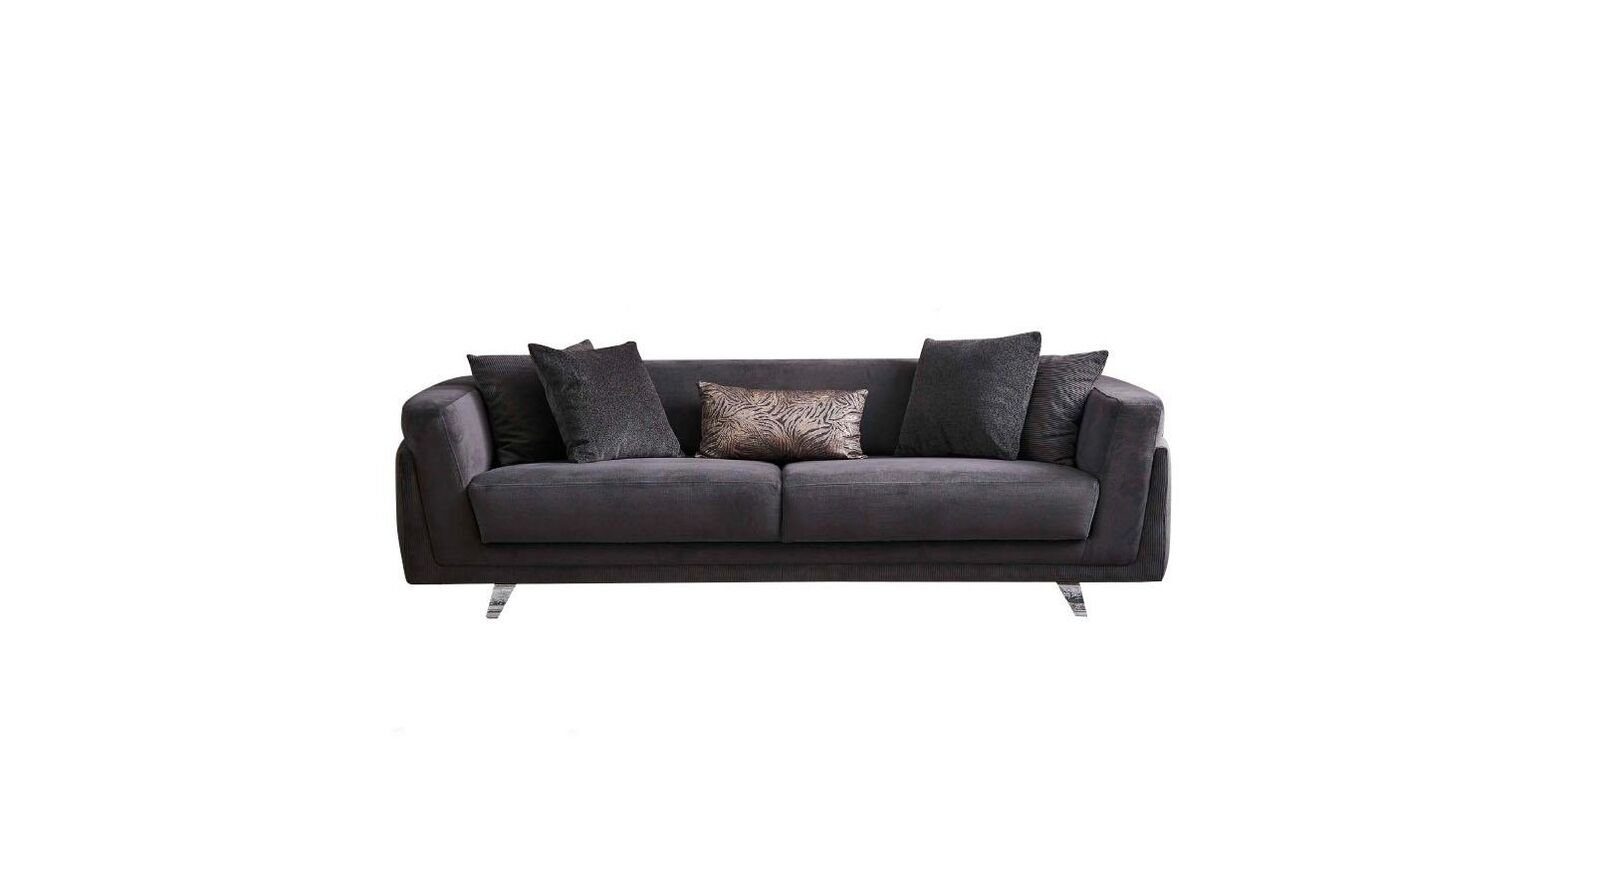 JVmoebel 3-Sitzer Couch mit Bettfunktion Sofa 3 Sitzer Grau Stoff Stoffsofa Dreisitzer, 1 Teile, Made in Europa